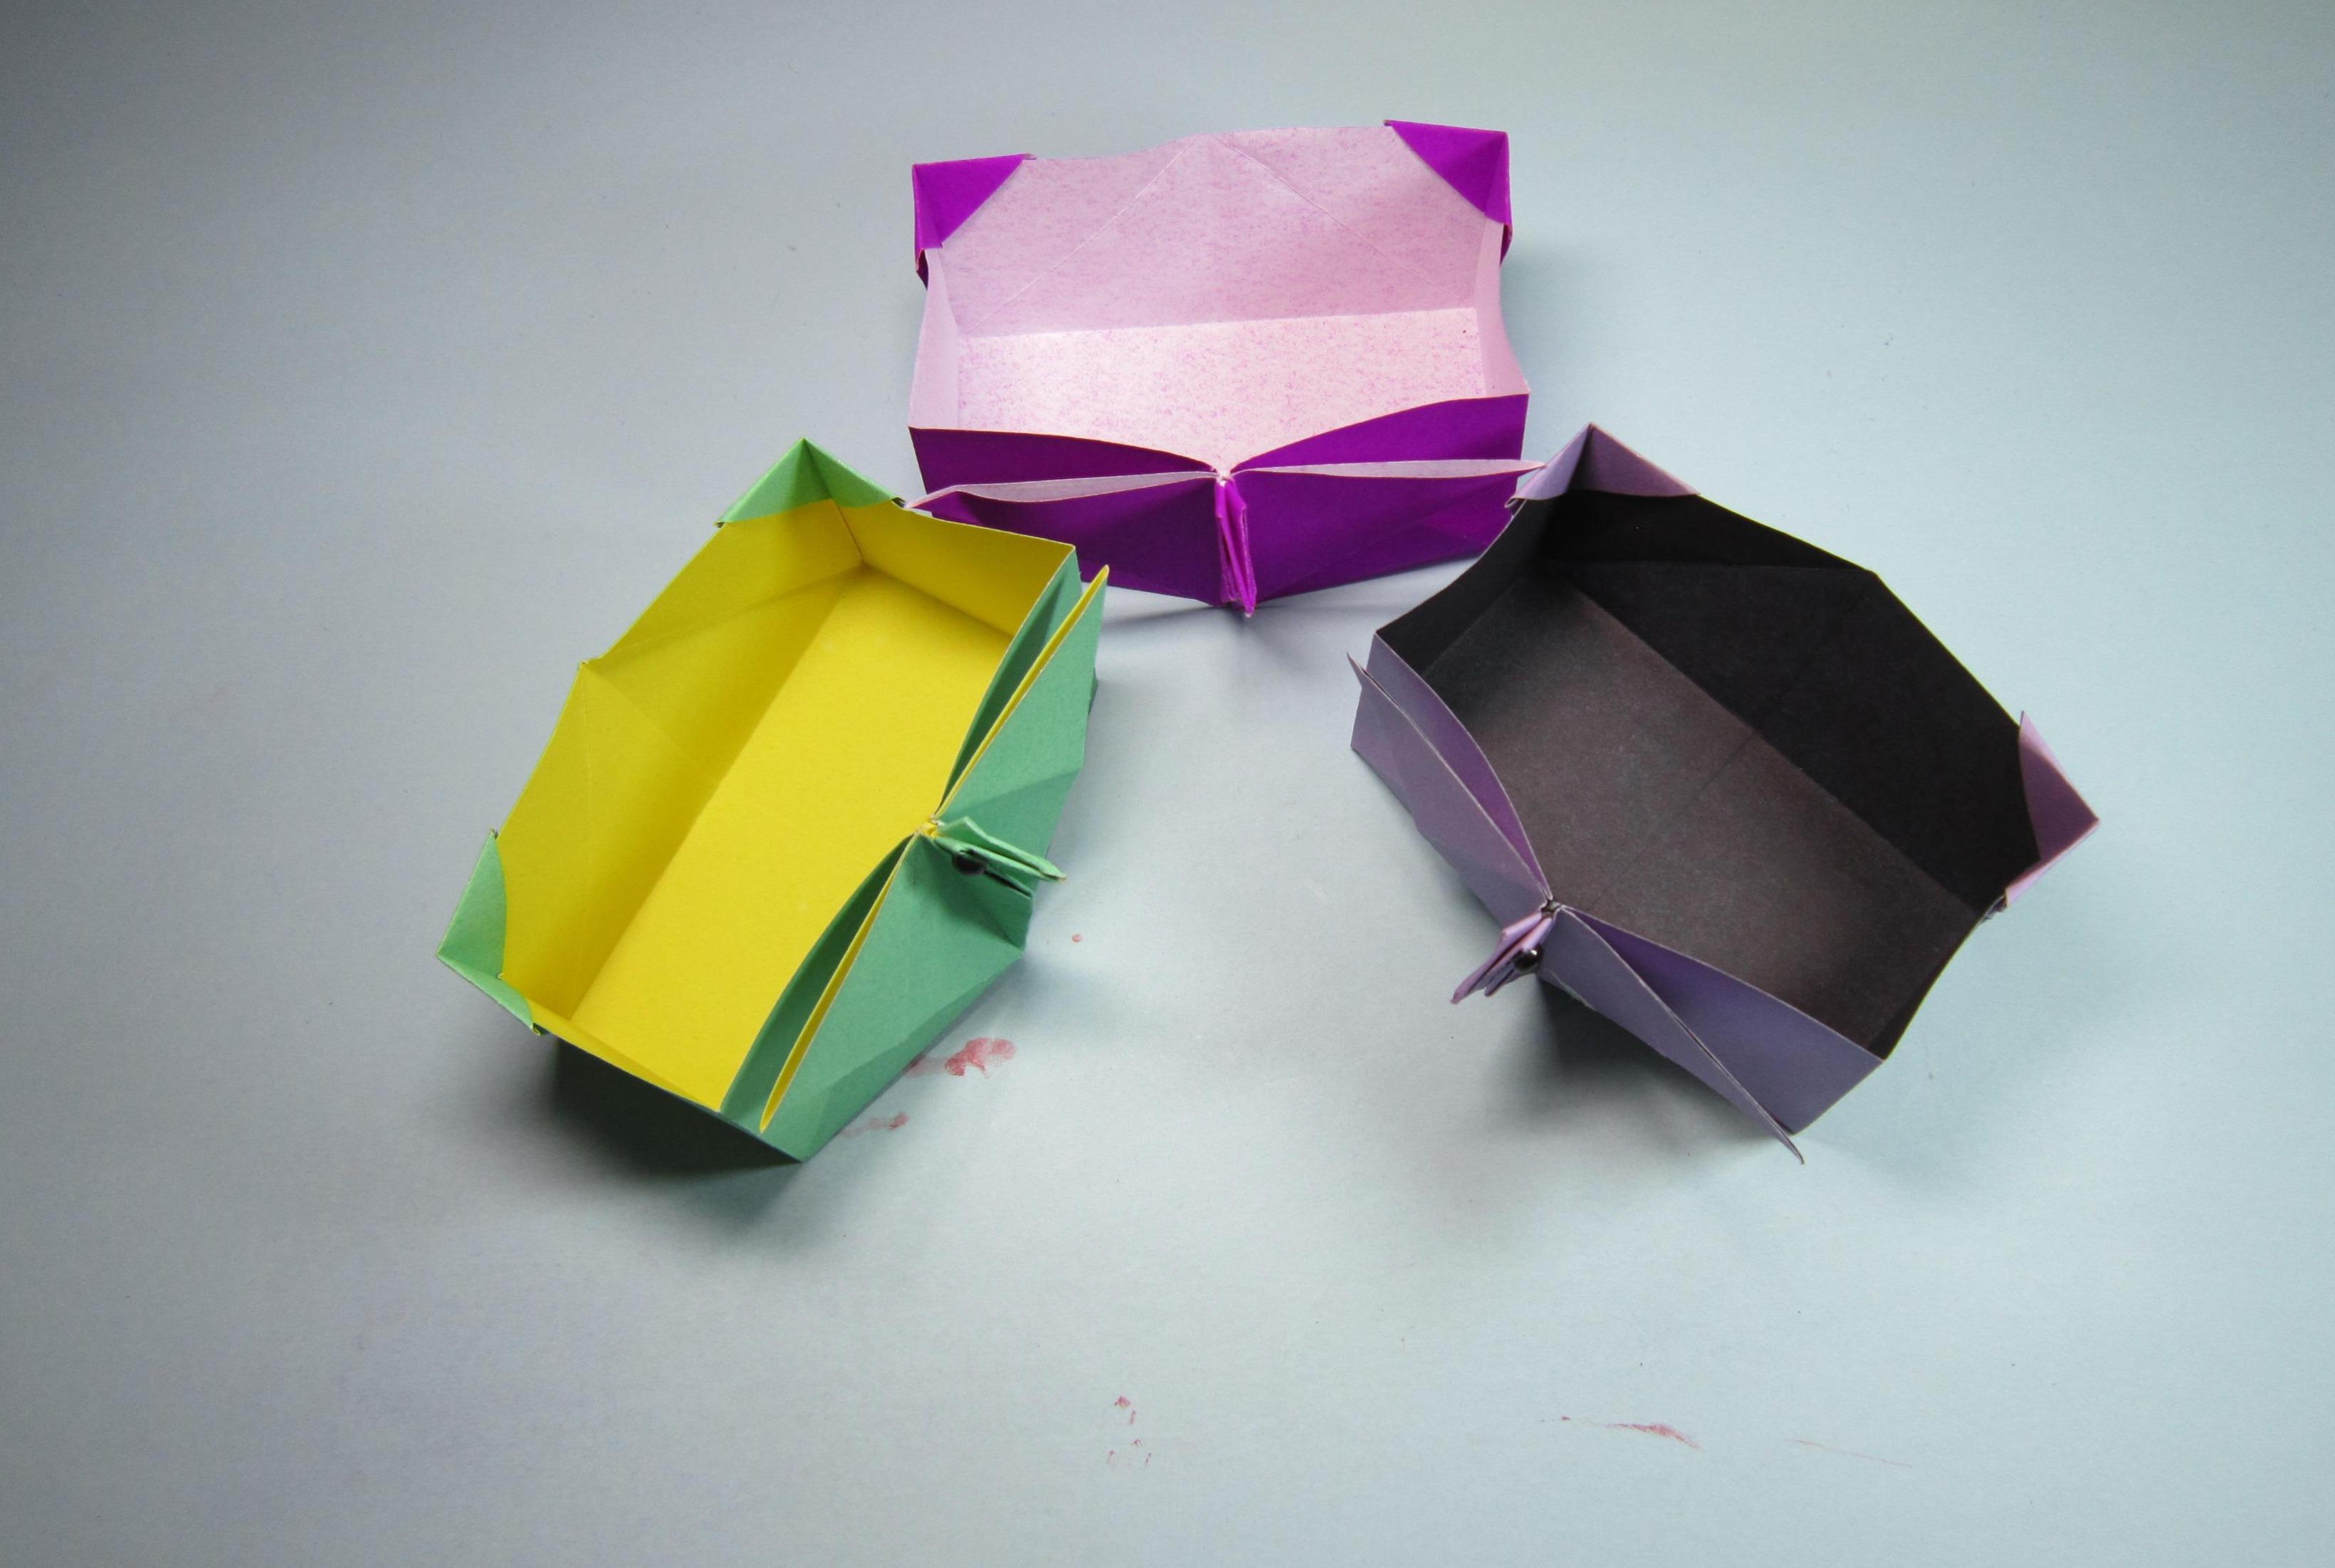 视频:儿童手工折纸盒子,一张纸就能折出简单又可爱的小鸟收纳盒子